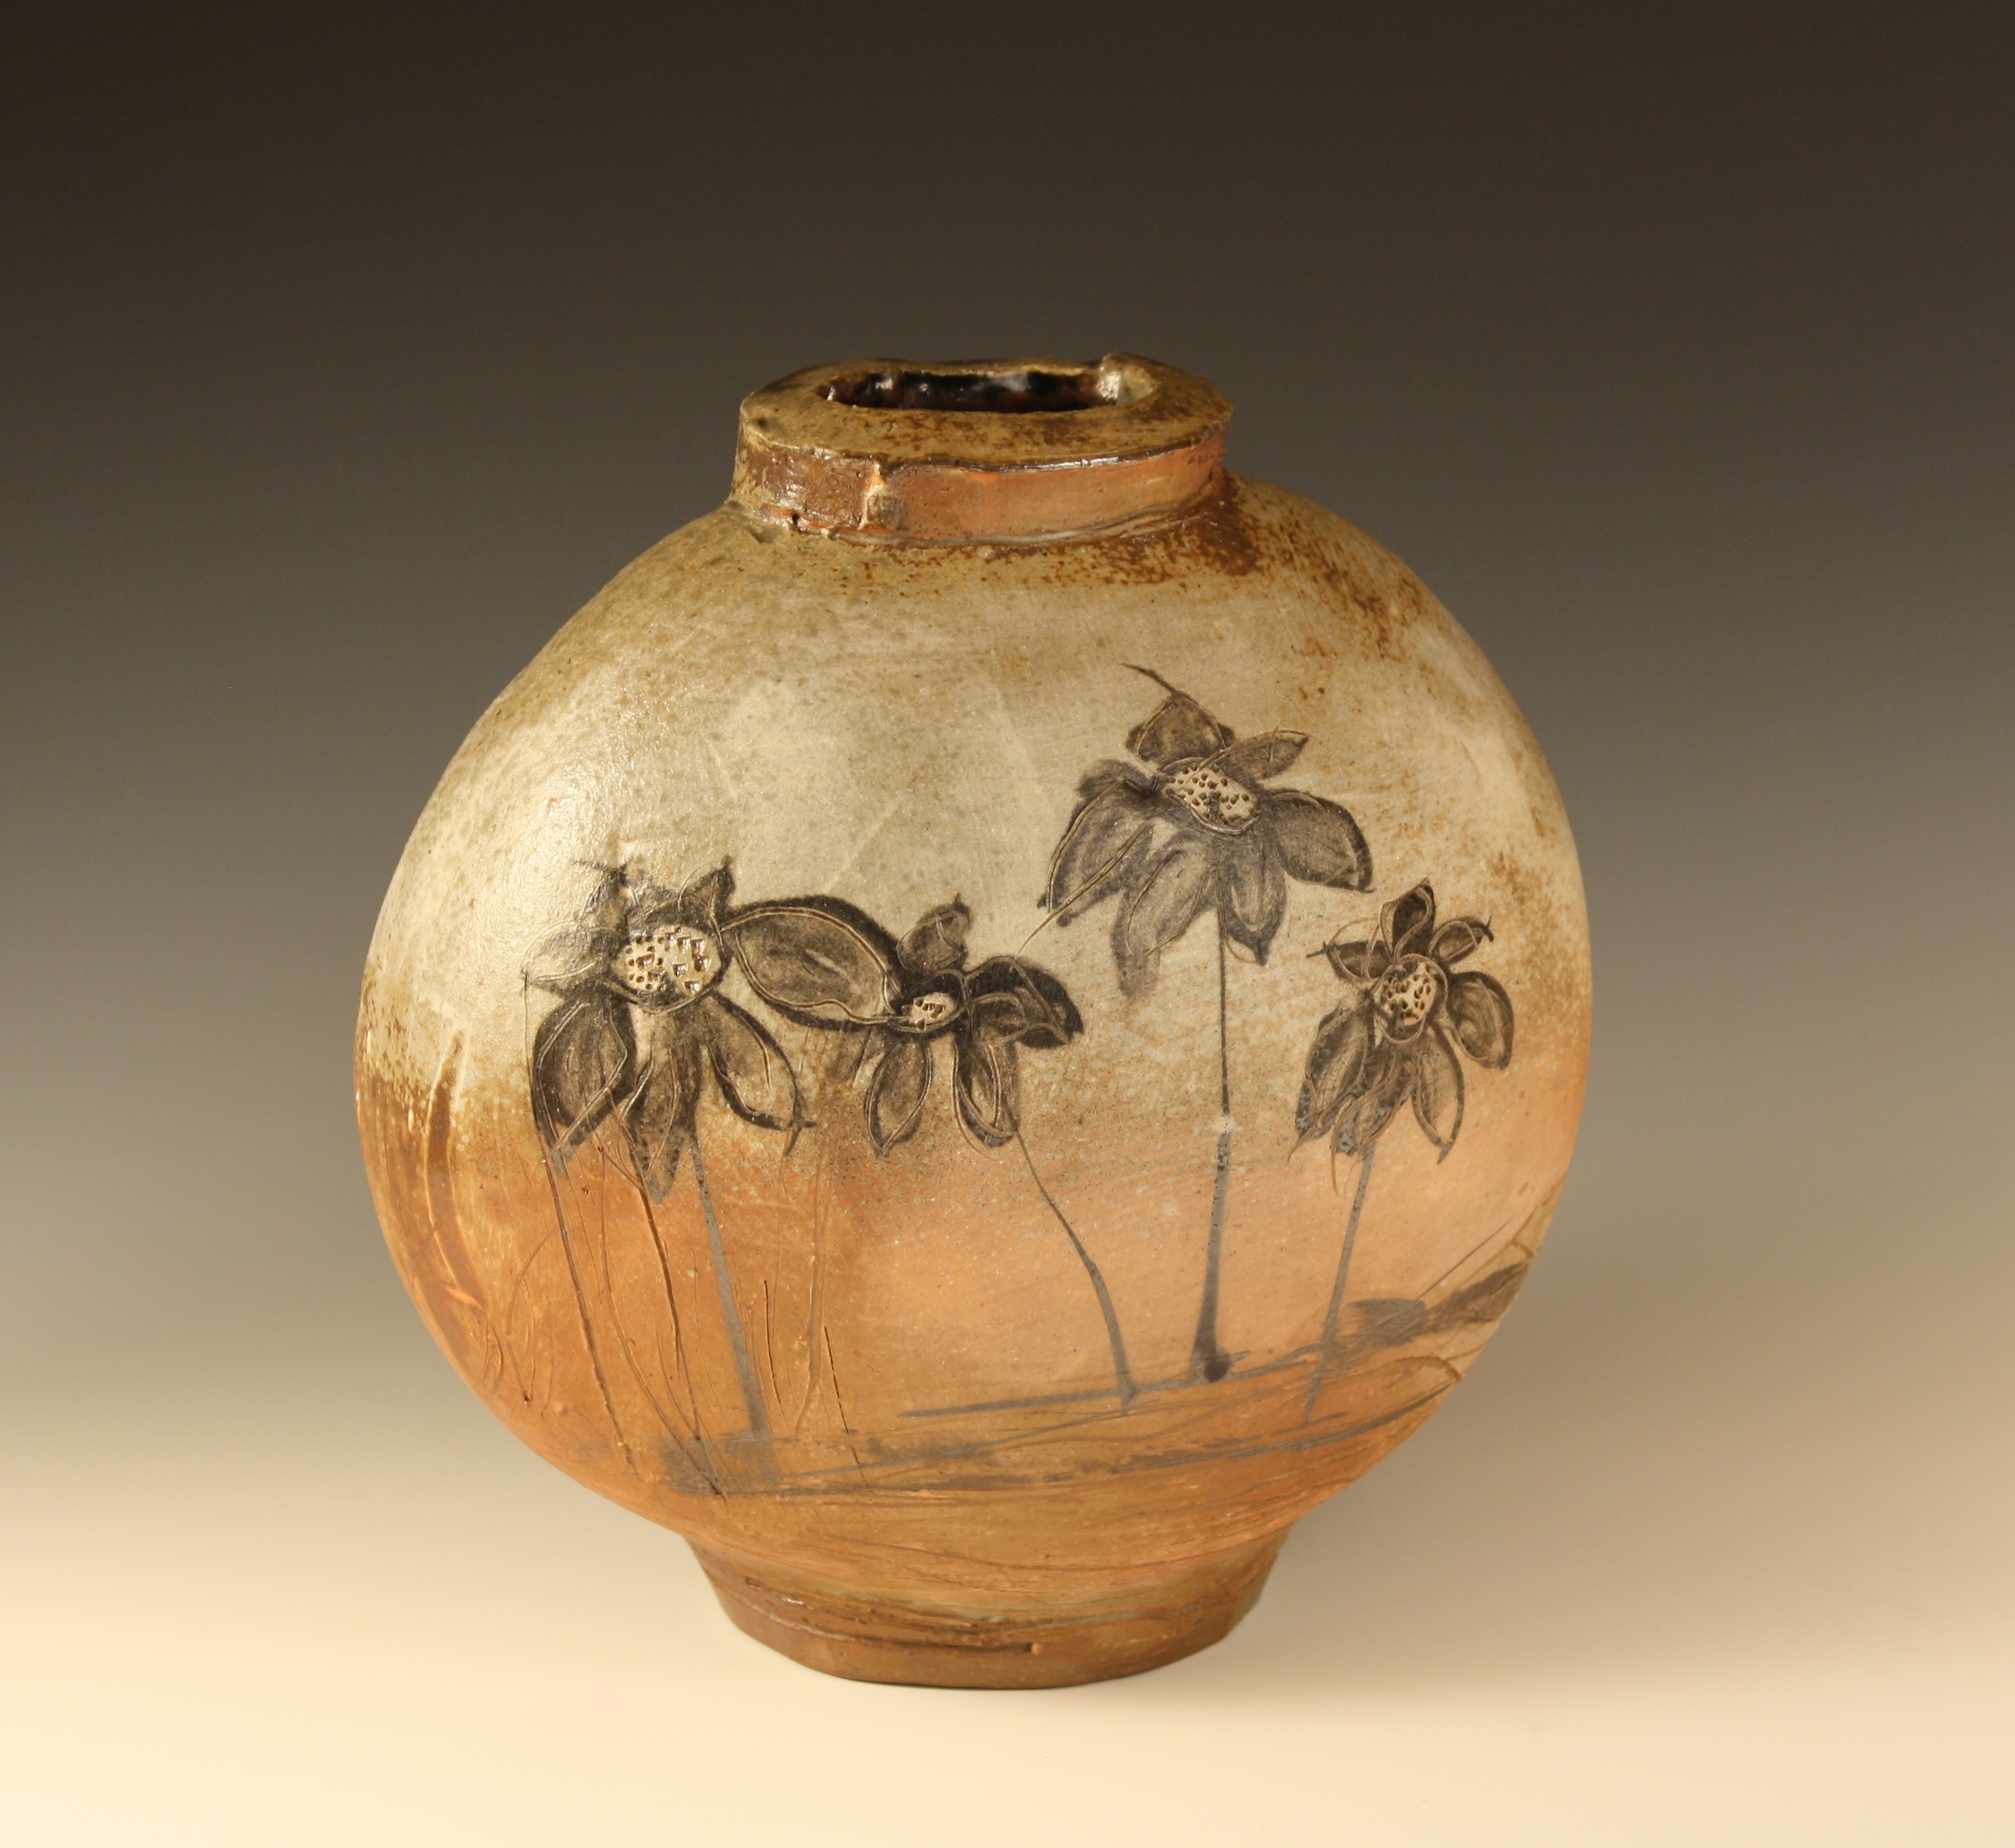 Pottery vase by Matt Wren. | Potter: Matt Wren | Pinterest | Wren ...